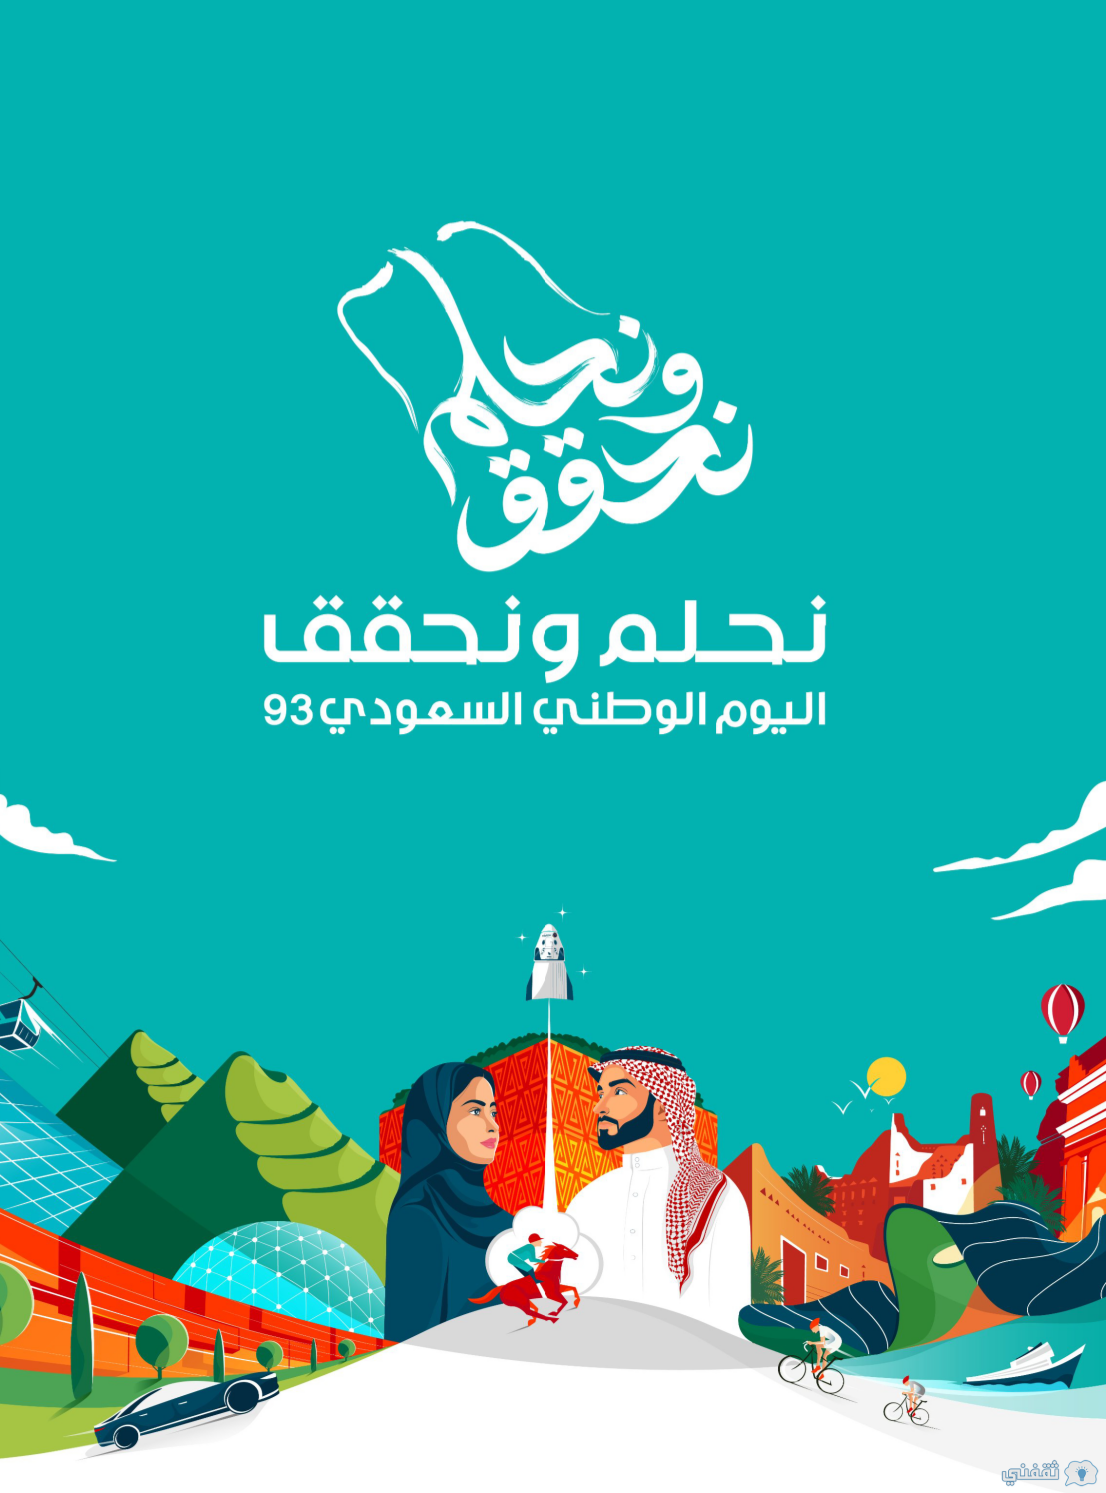 صور شعار نحلم ونحقق اليوم الوطني السعودي 93